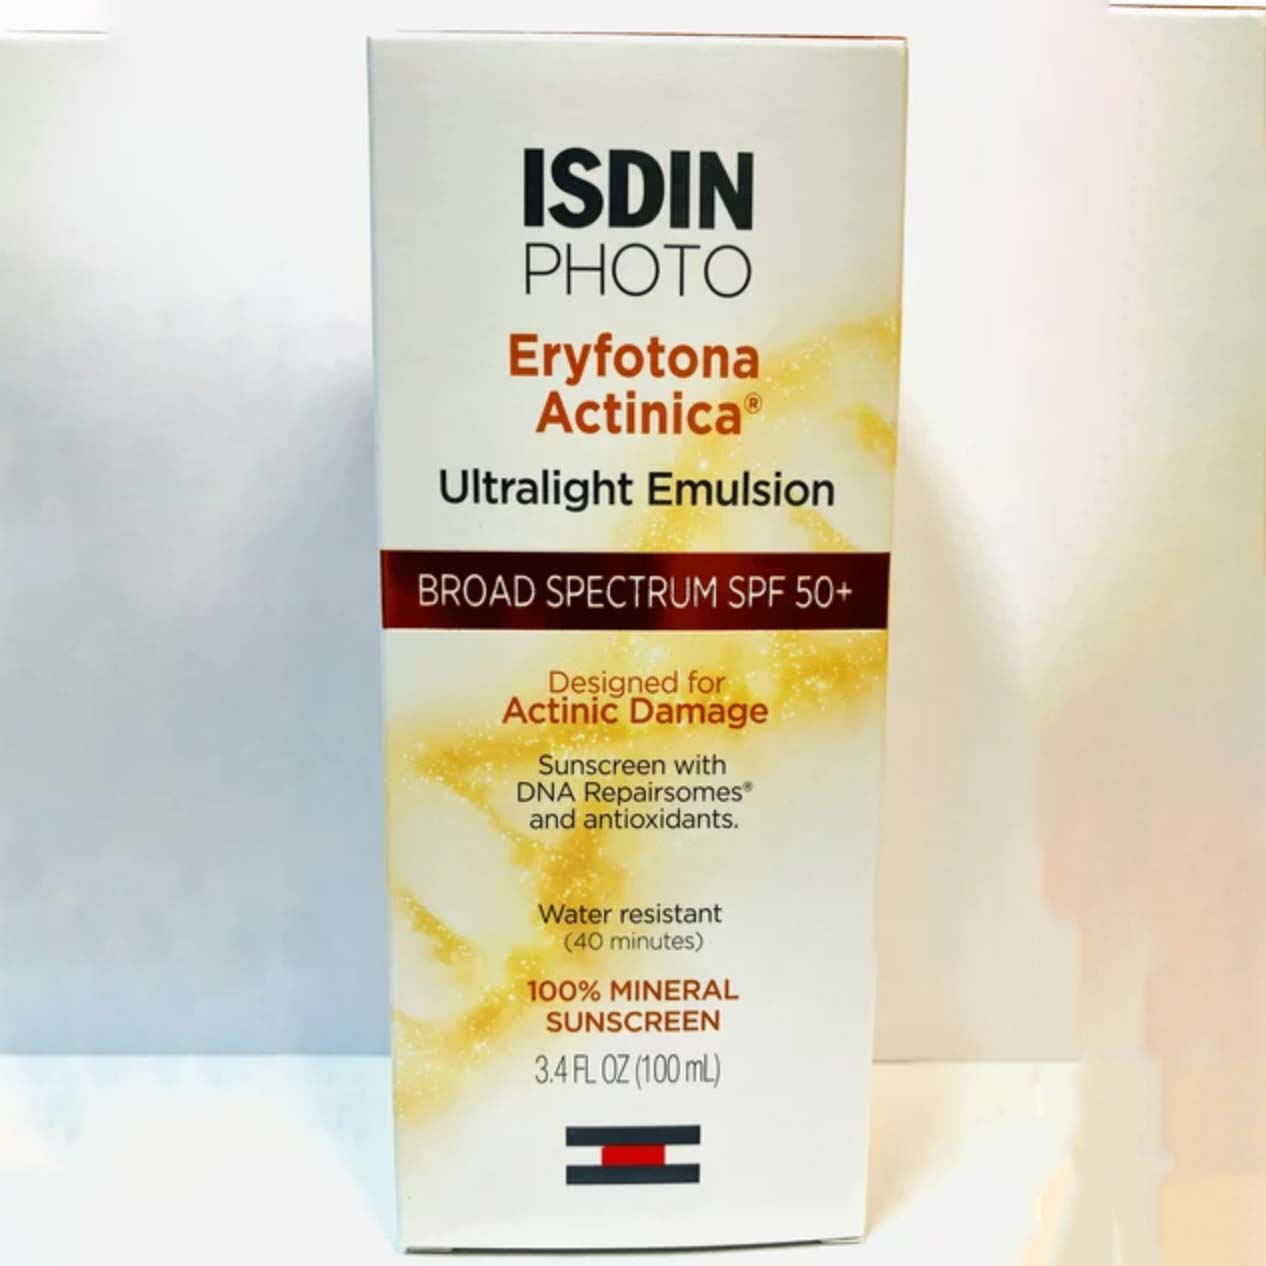 ISDIN PHOTO Eryfotona Actinica Ultralight Emulsion